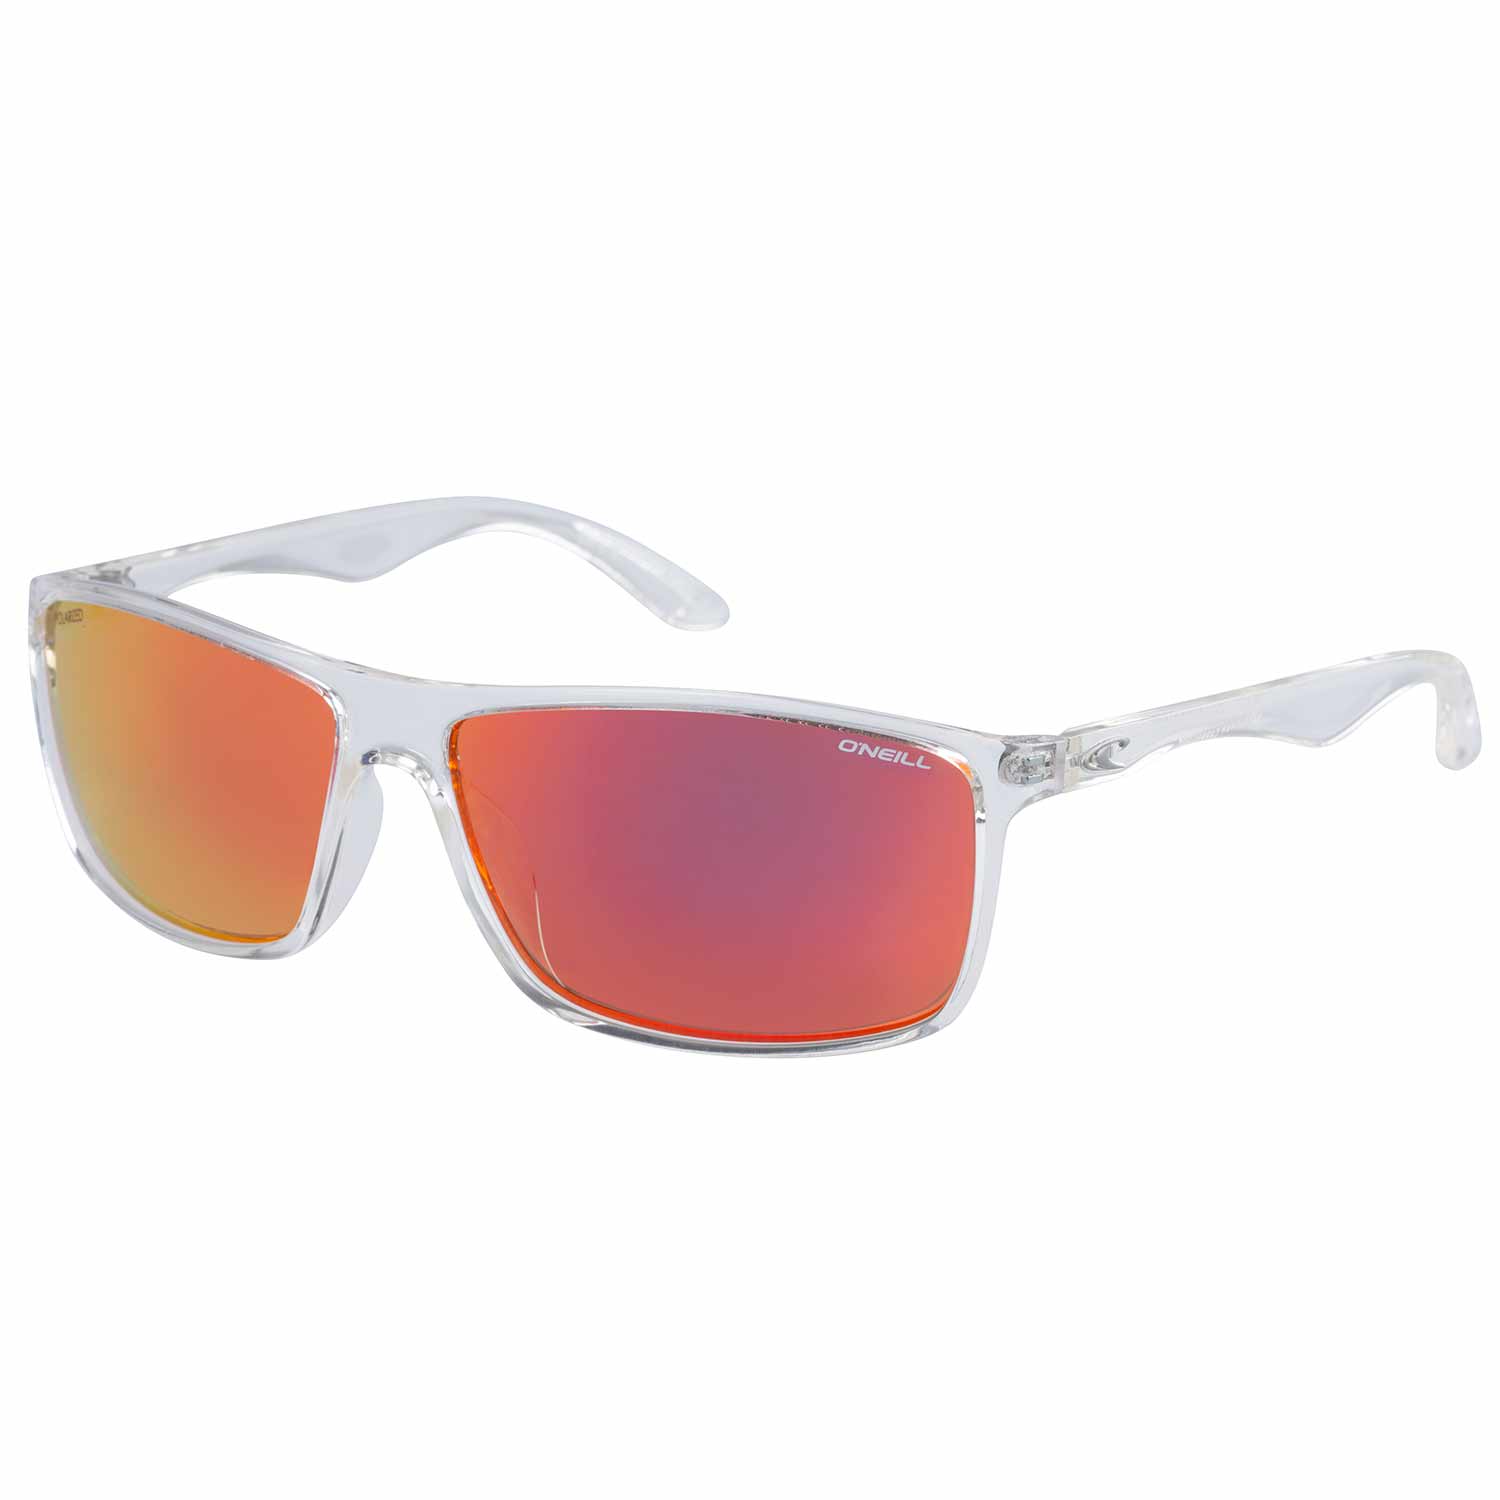 O'NEILL 9004 Large Classic Polarized Sunglasses | West Marine